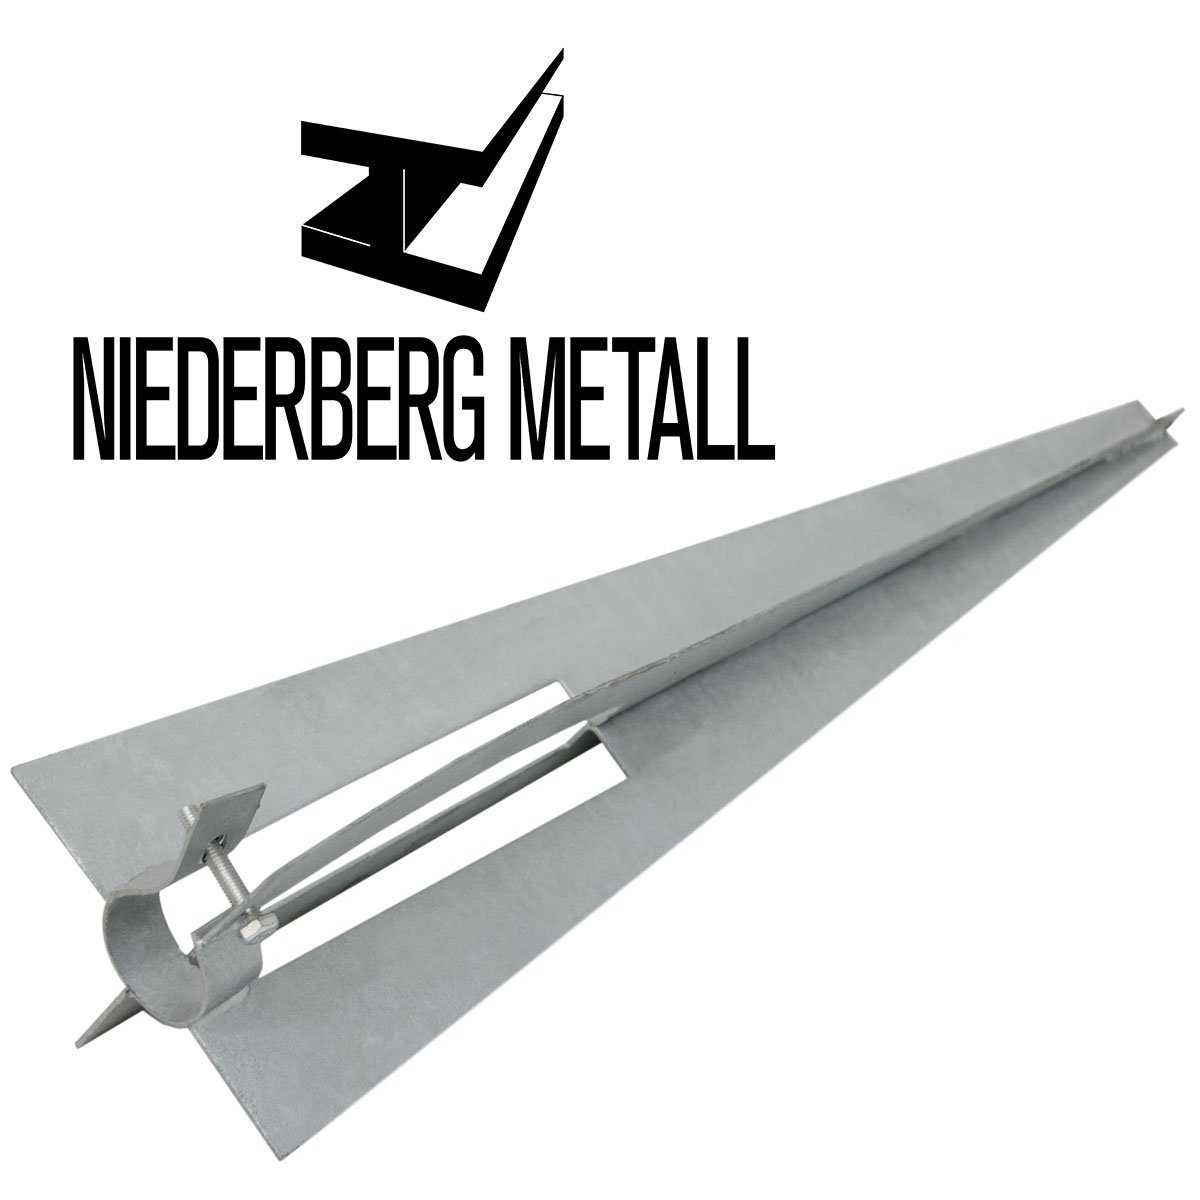 Einschlaghülse, Klemmschelle Bodenhülse Metall Einschlagbodenhülse Metall Bodenhülse 50cm mit Ø36mm Niederberg